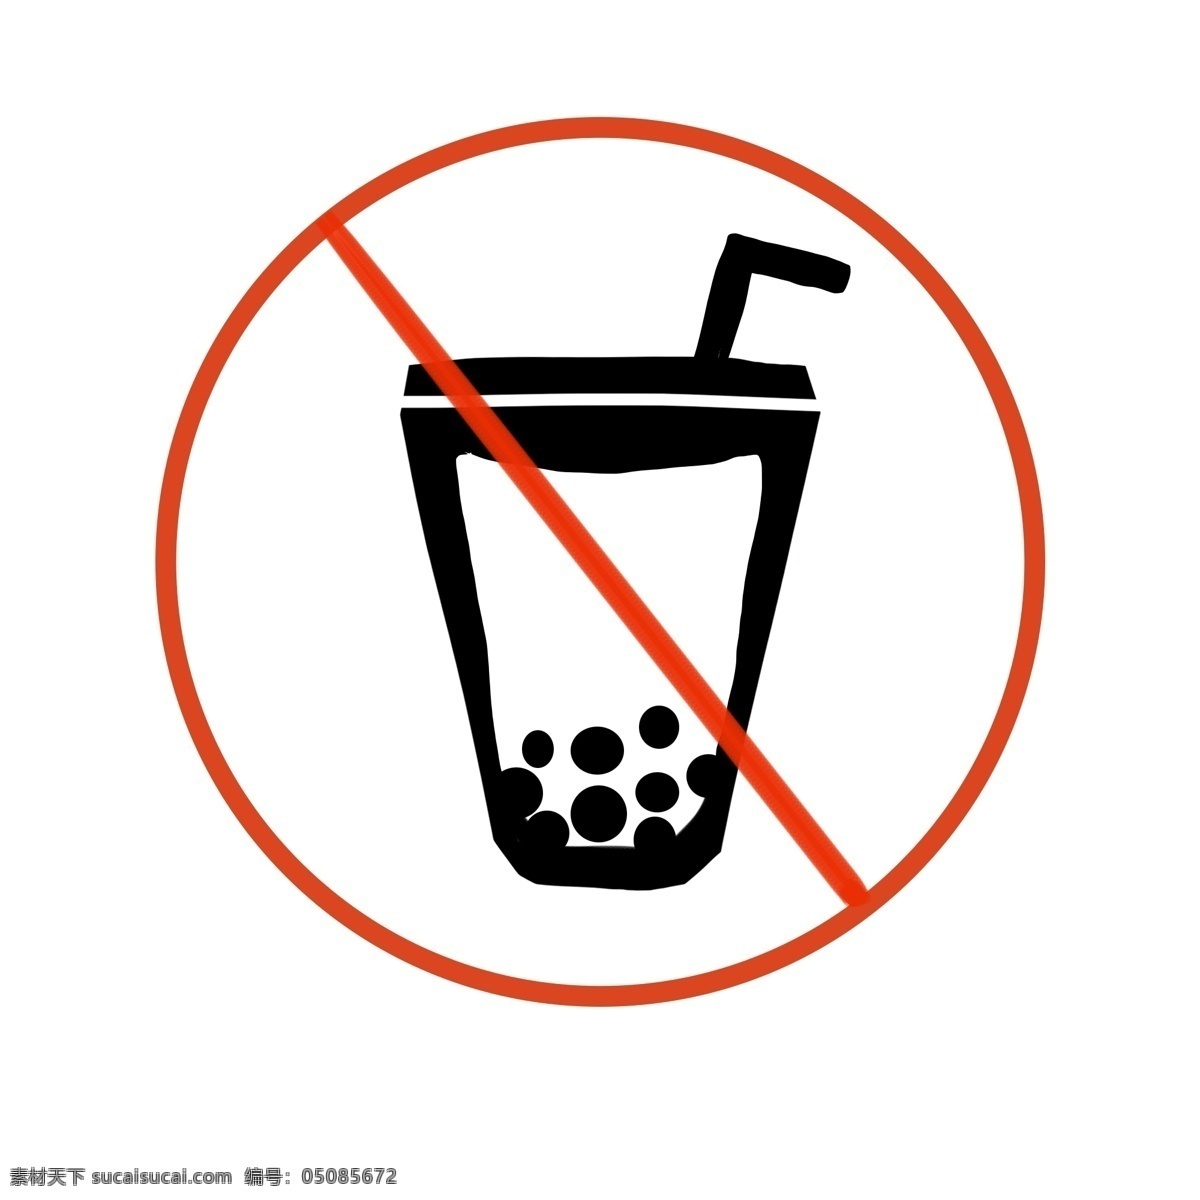 禁止 喝 奶茶 图标 插画 禁止奶茶 吸管 警示图标 禁止图标 禁止喝奶茶 奶茶图标